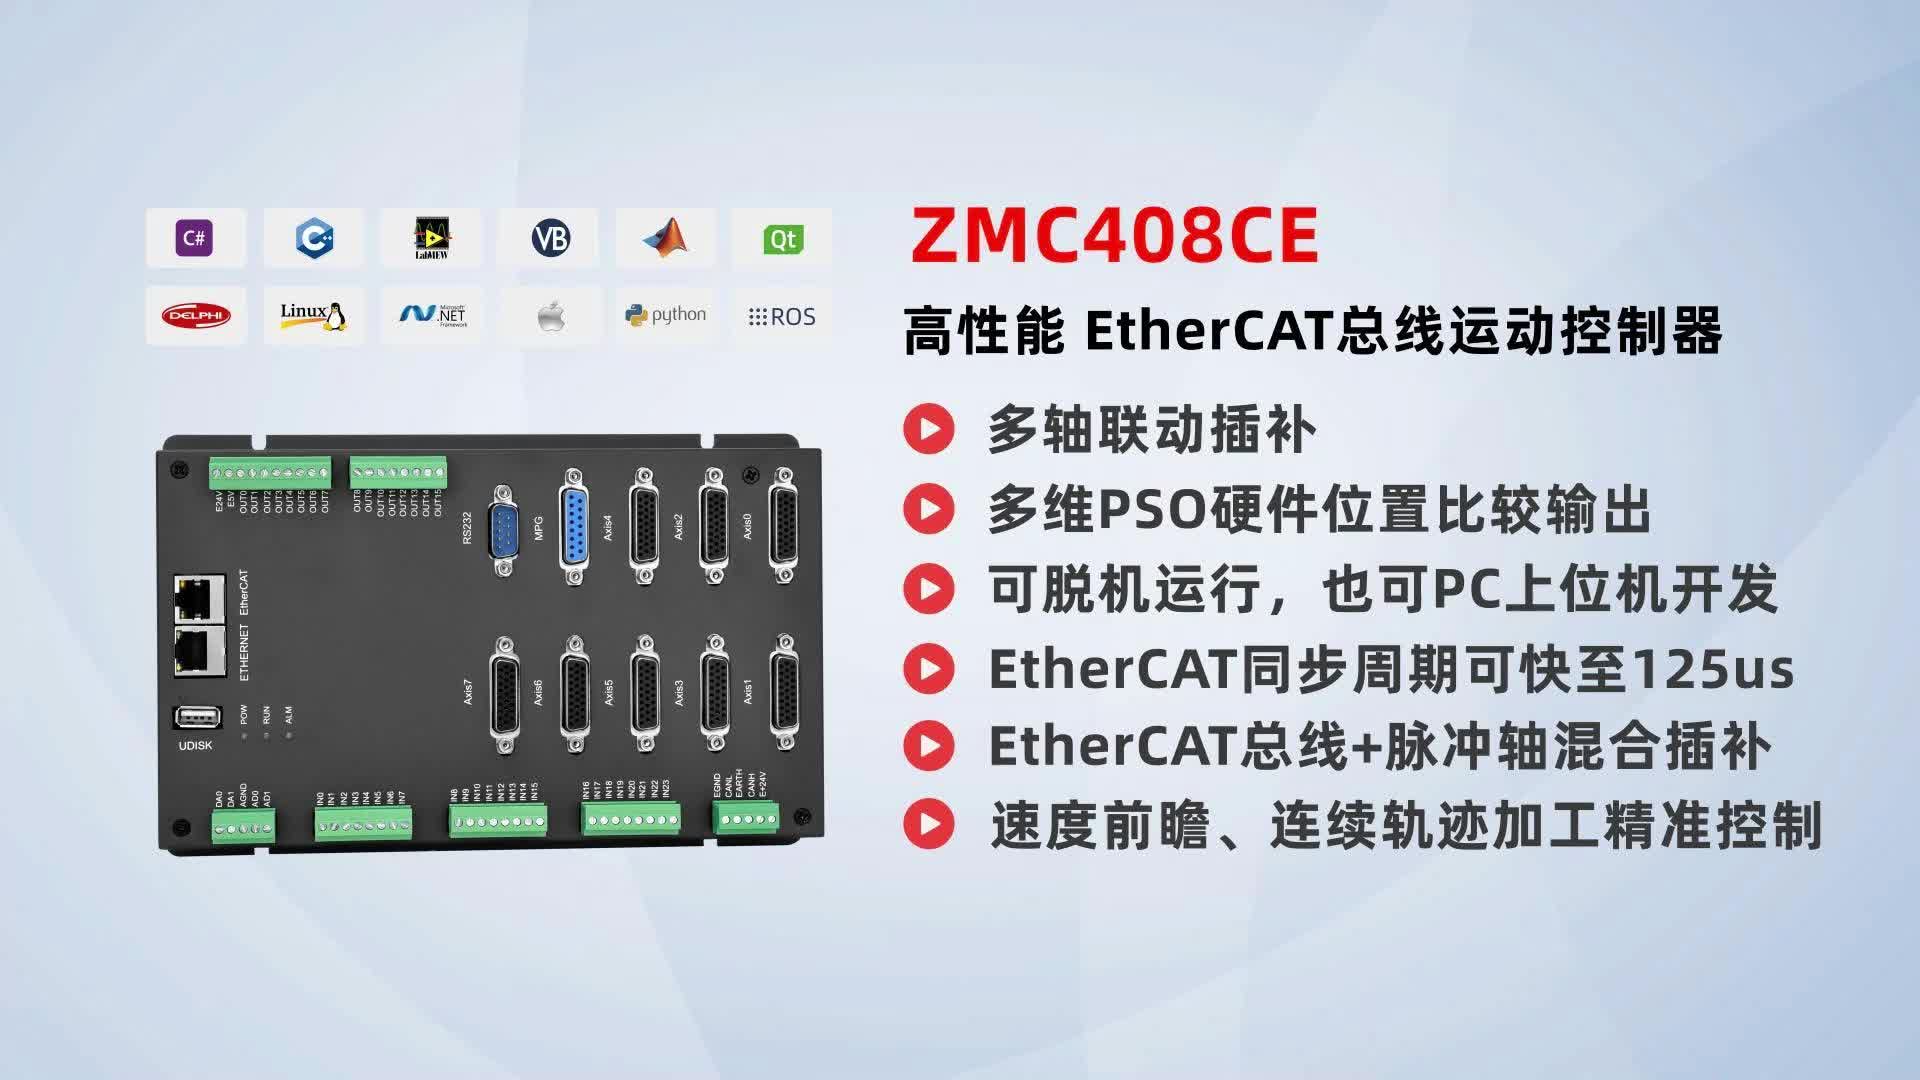 高性能EtherCAT总线运动控制器，带你玩转“8通道独立PSO”应用场景# 运动控制器# EtherCAT